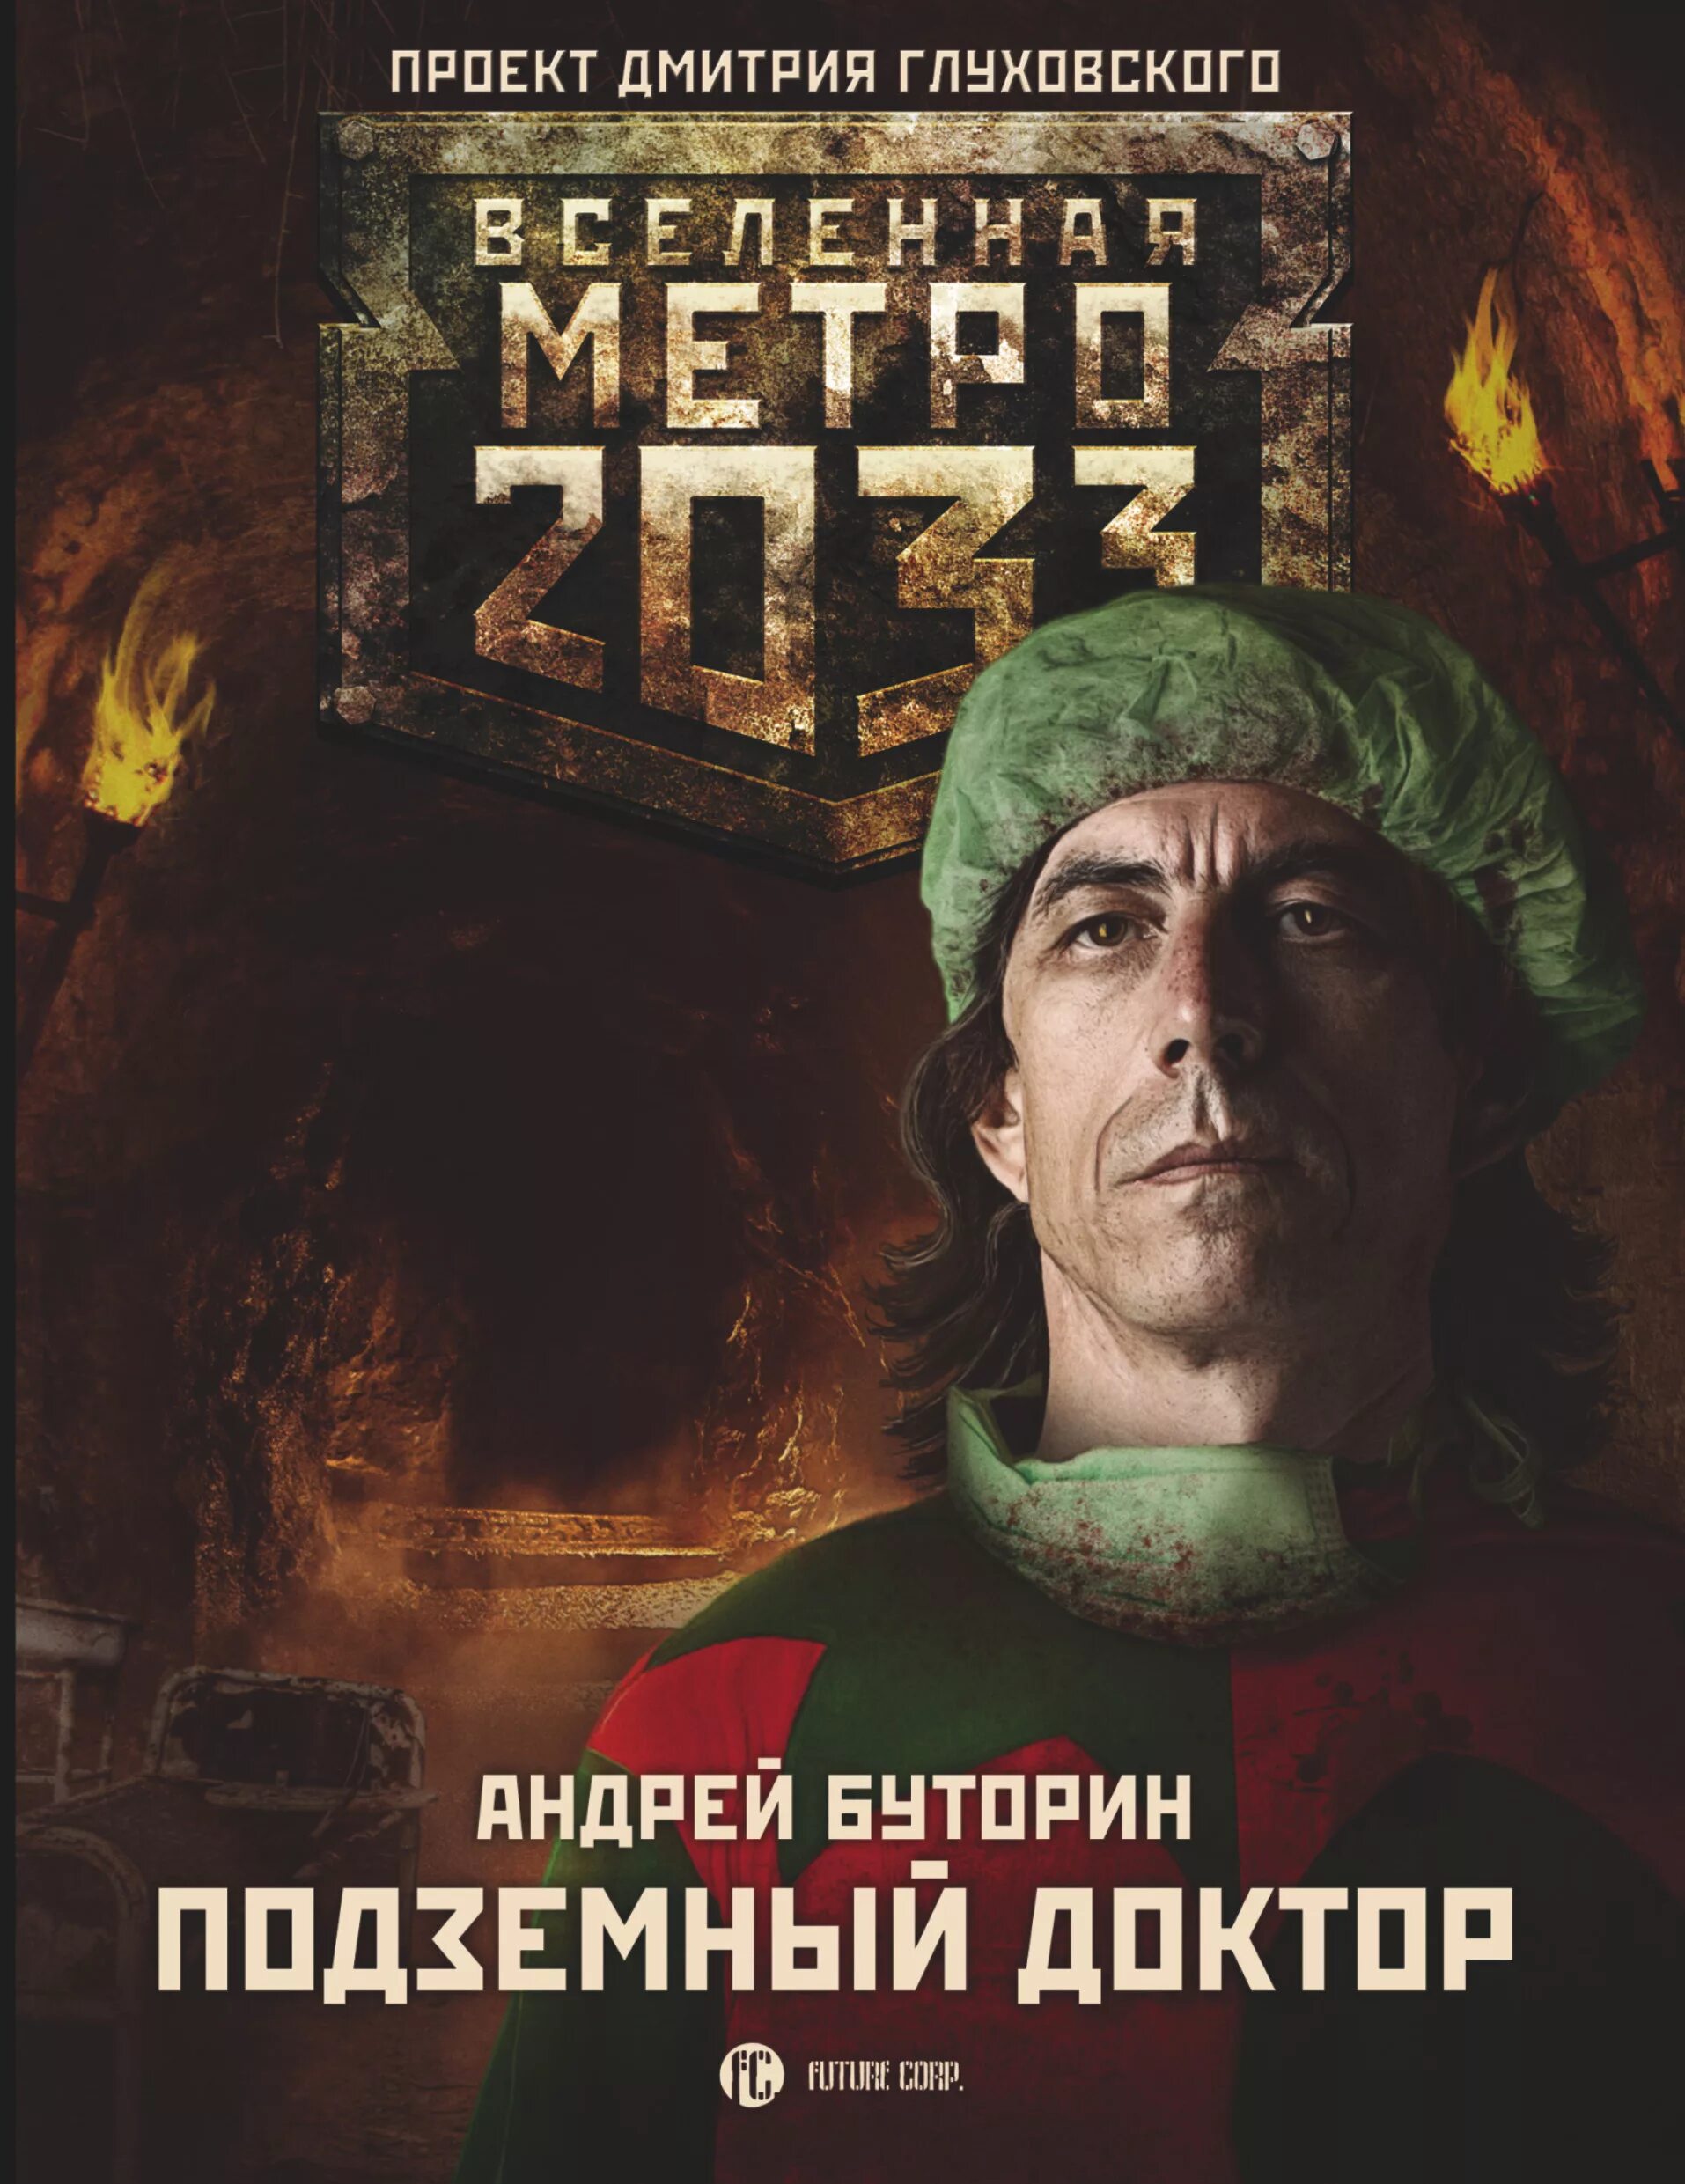 Метро 2033 подземный доктор. Книга метро 2033 подземный доктор.